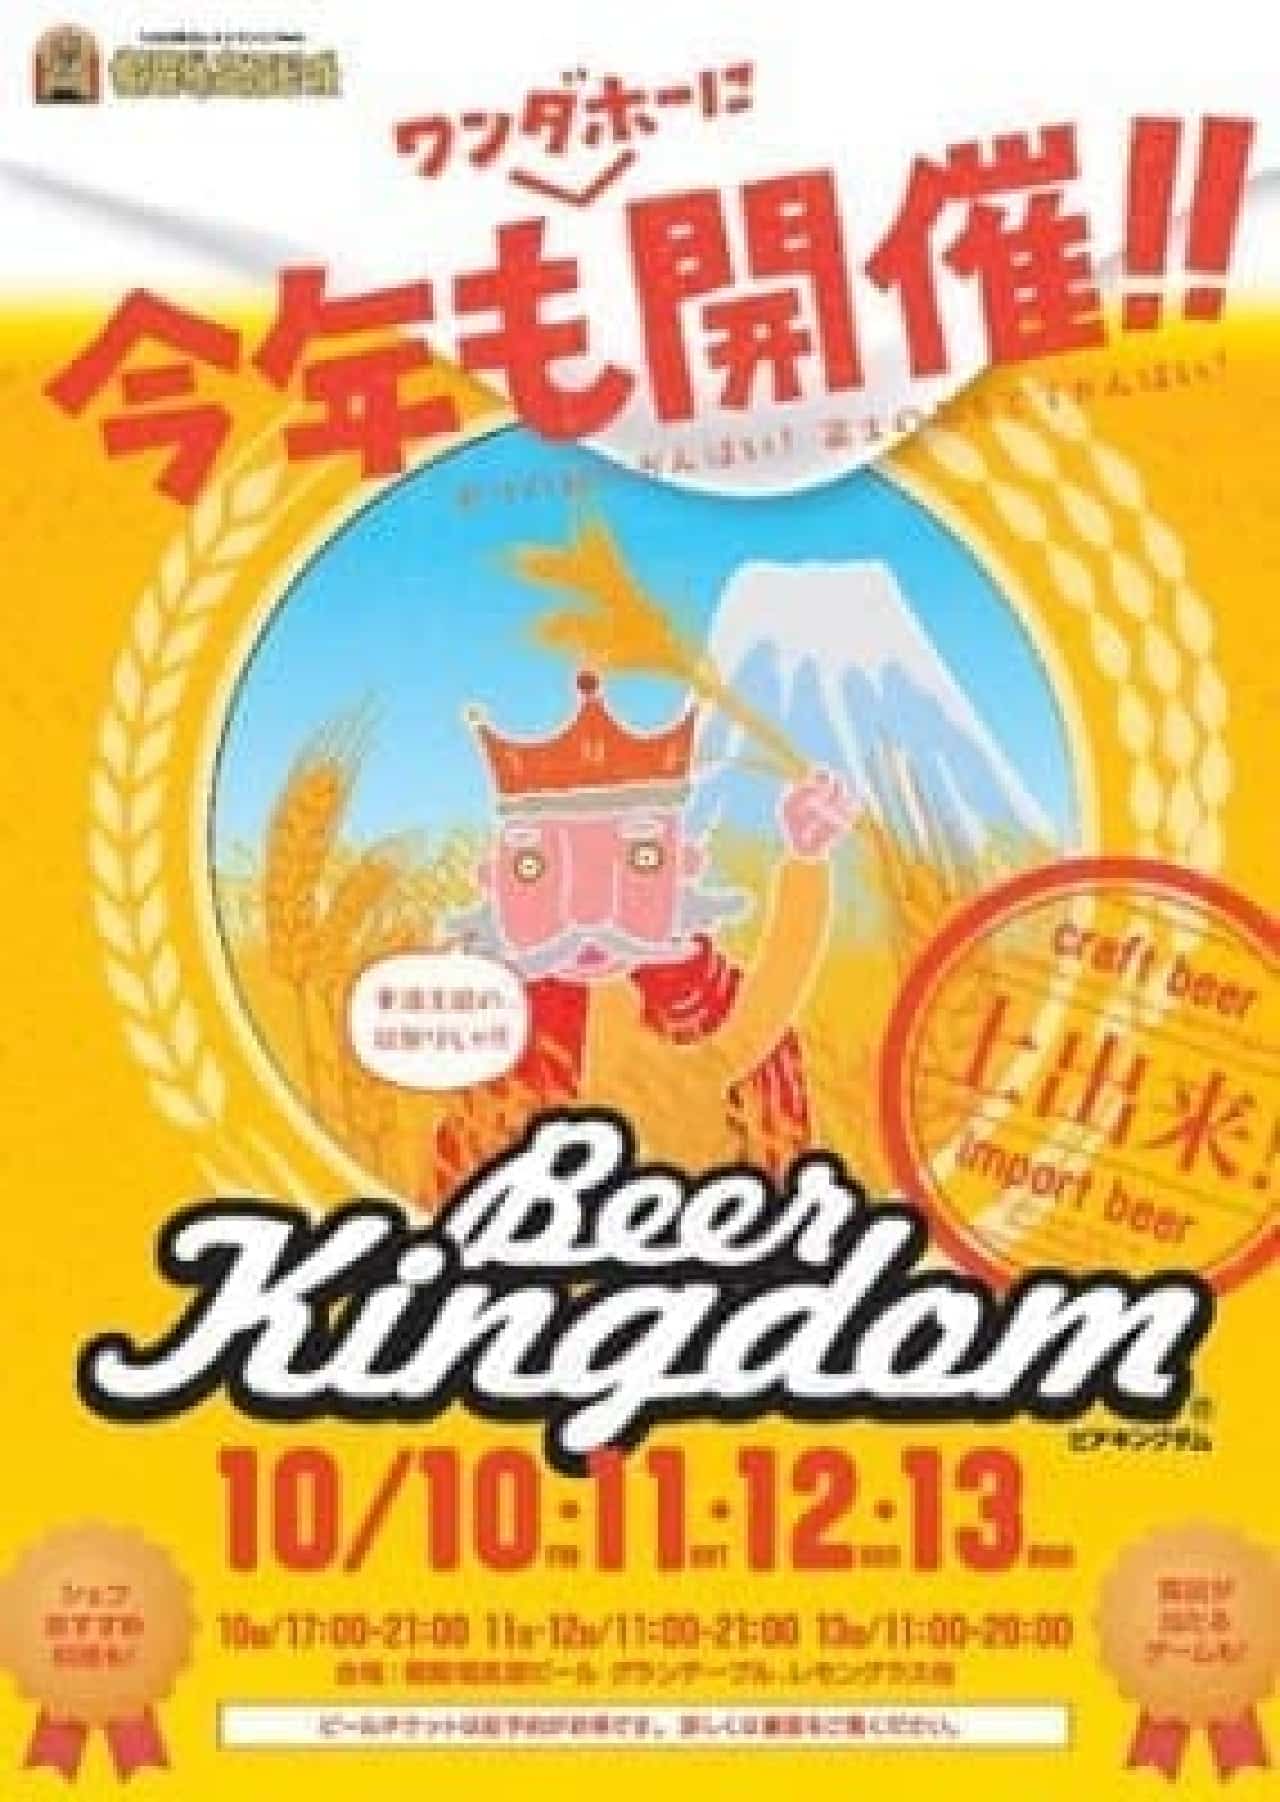 Craft beer festival "Beer Kingdom" held